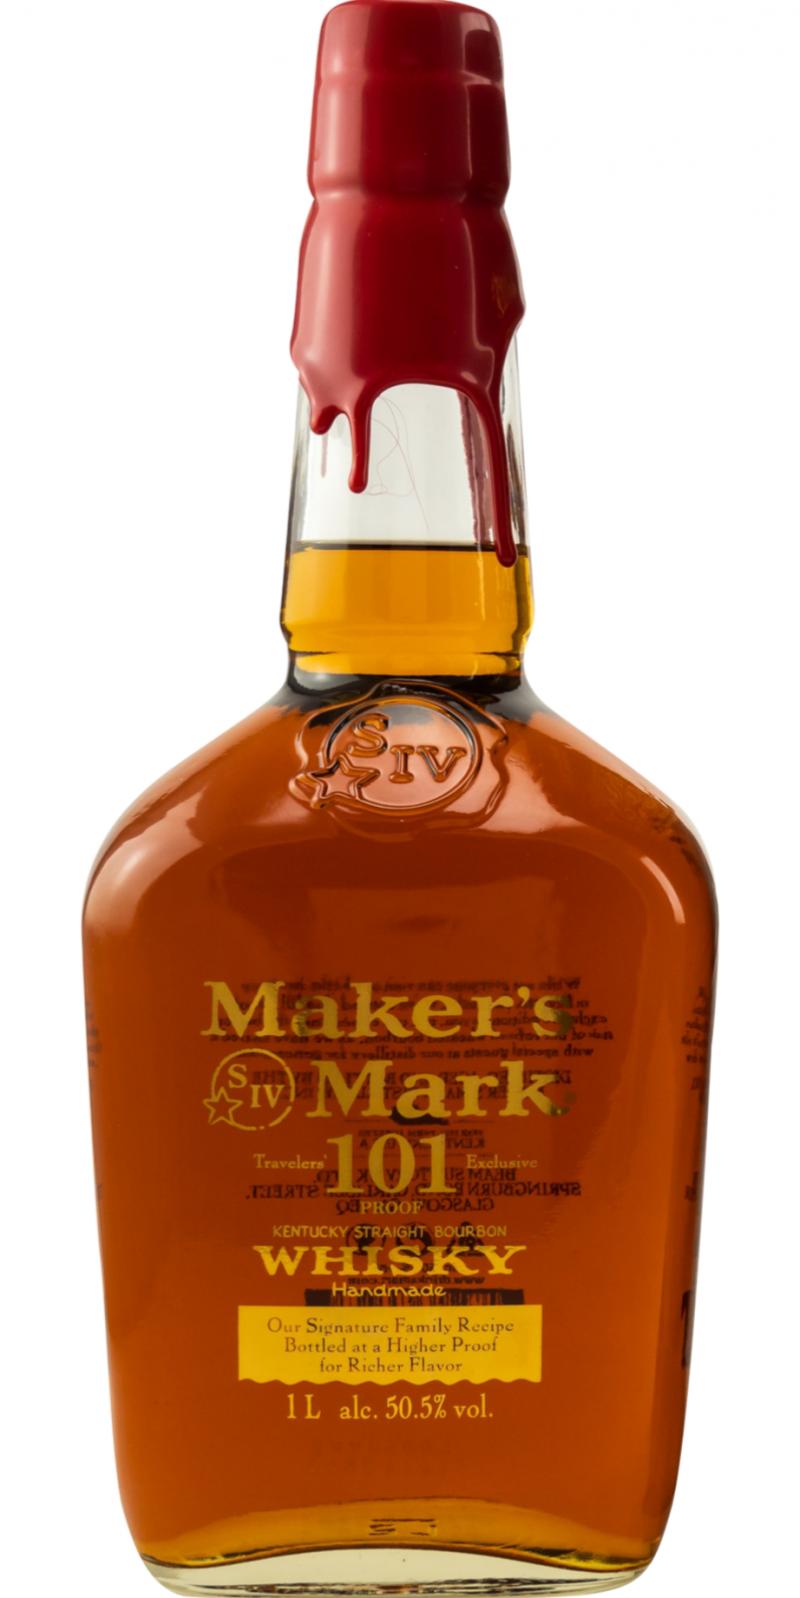 Maker's Mark Kentucky Straight Bourbon Whisky - 1 L